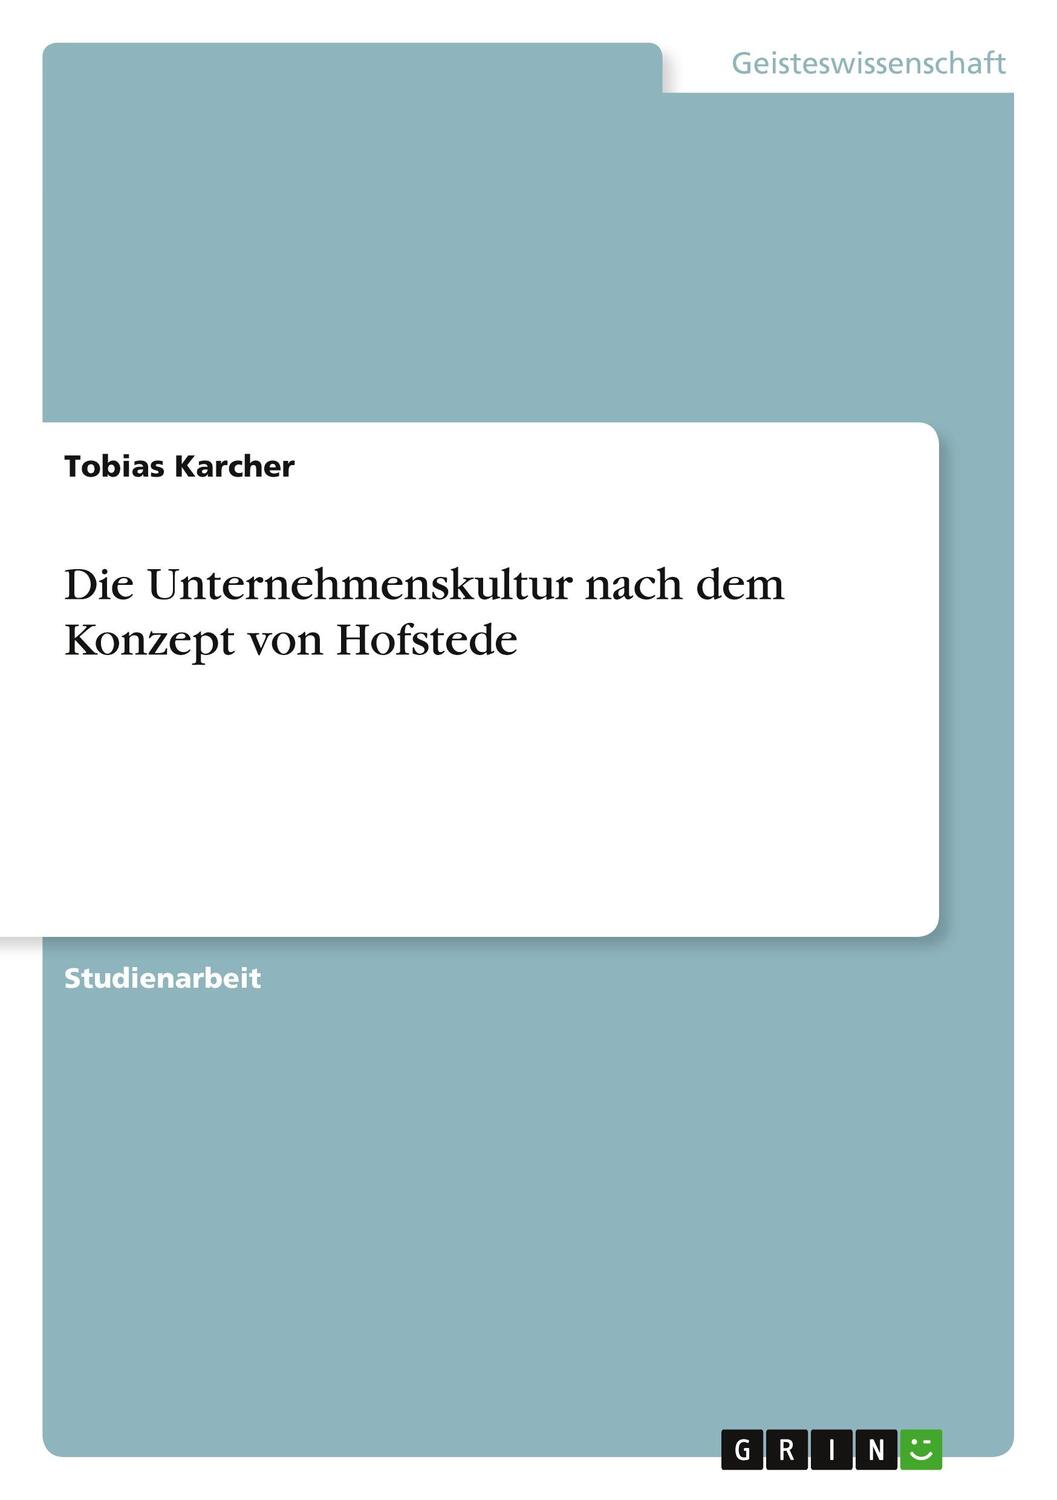 Die Unternehmenskultur nach dem Konzept von Hofstede - Karcher, Tobias